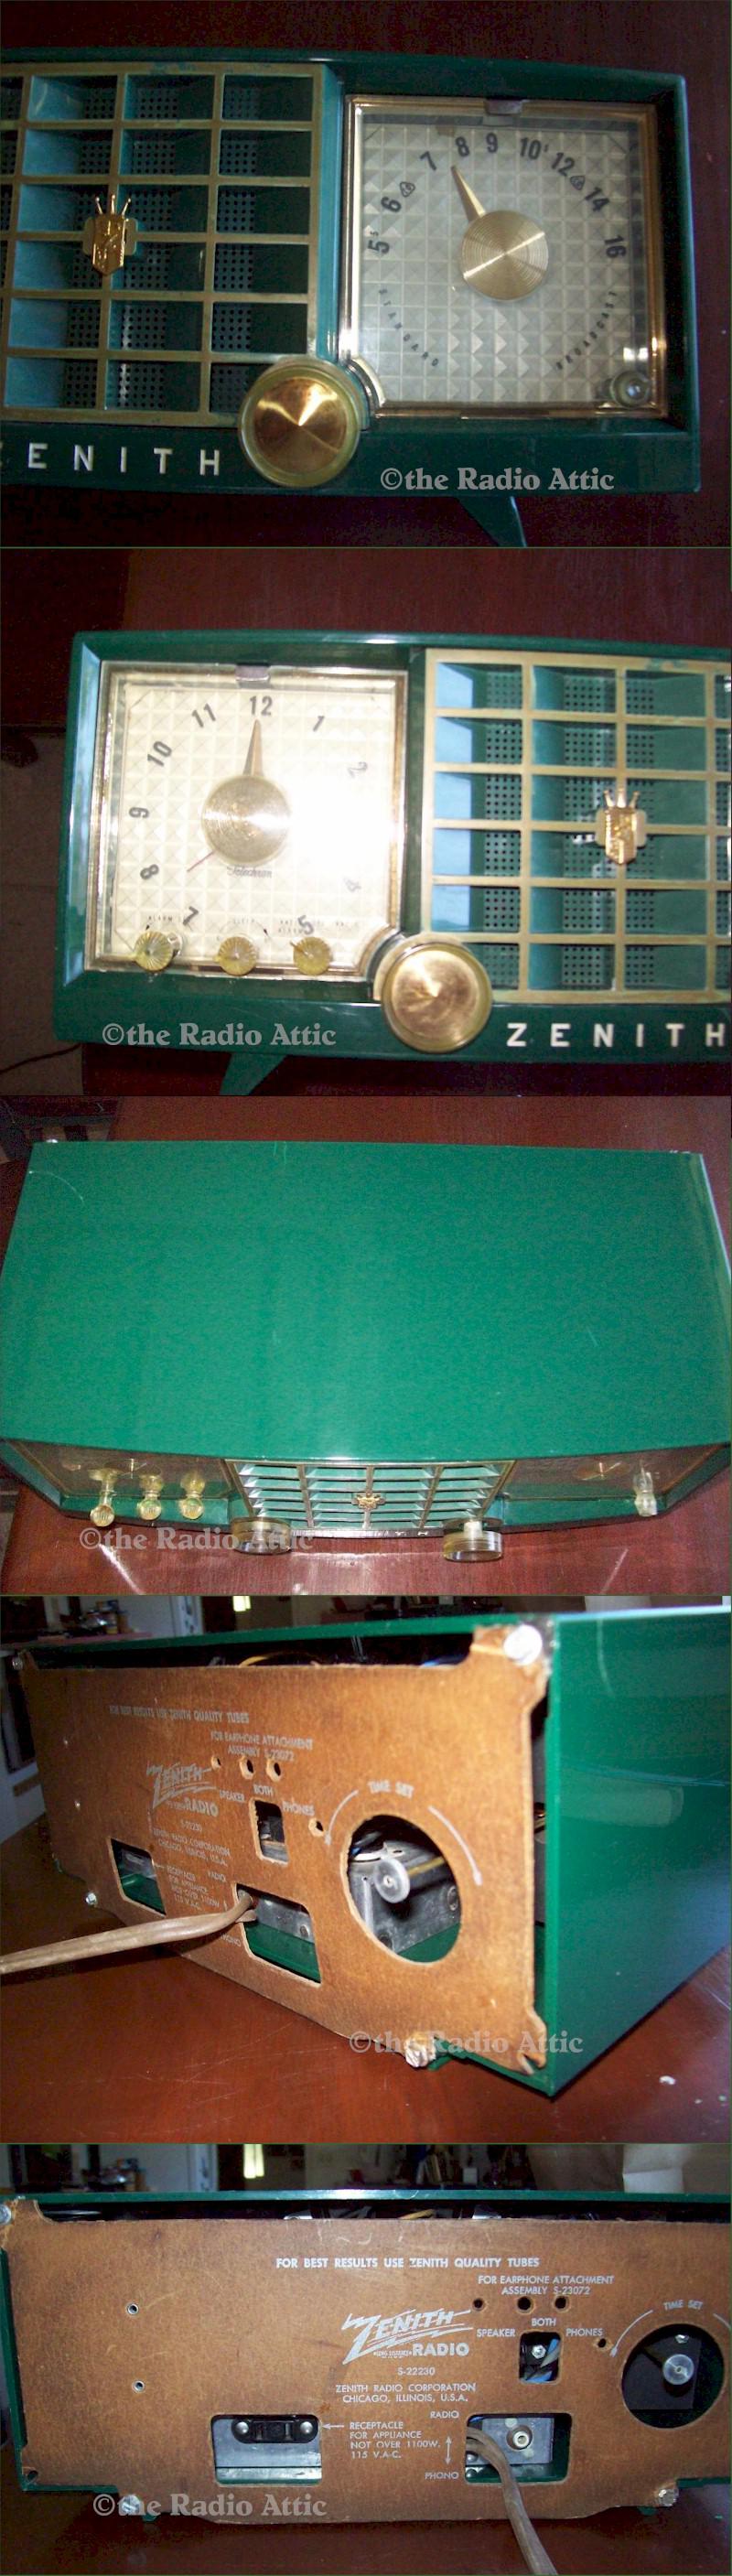 Zenith S22230 Clock Radio